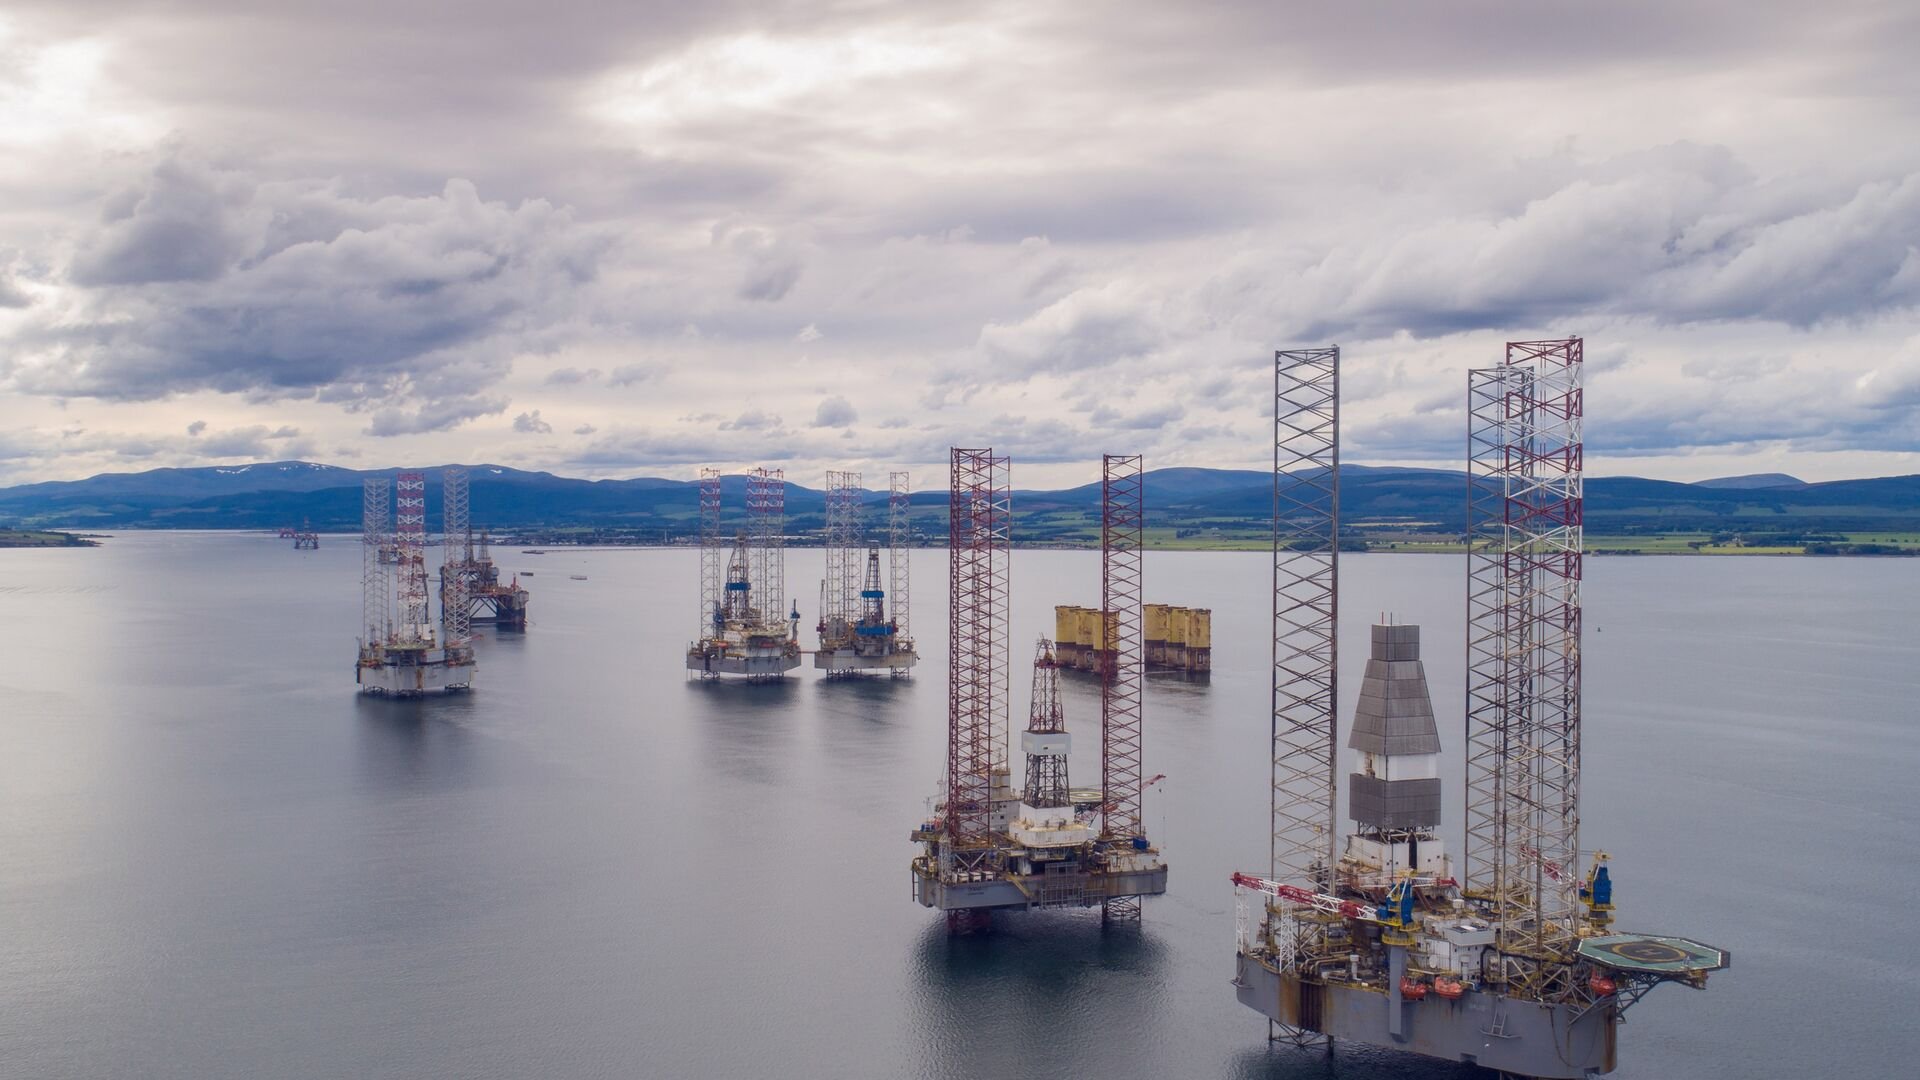 Offshore oil rigs in Scotland. 